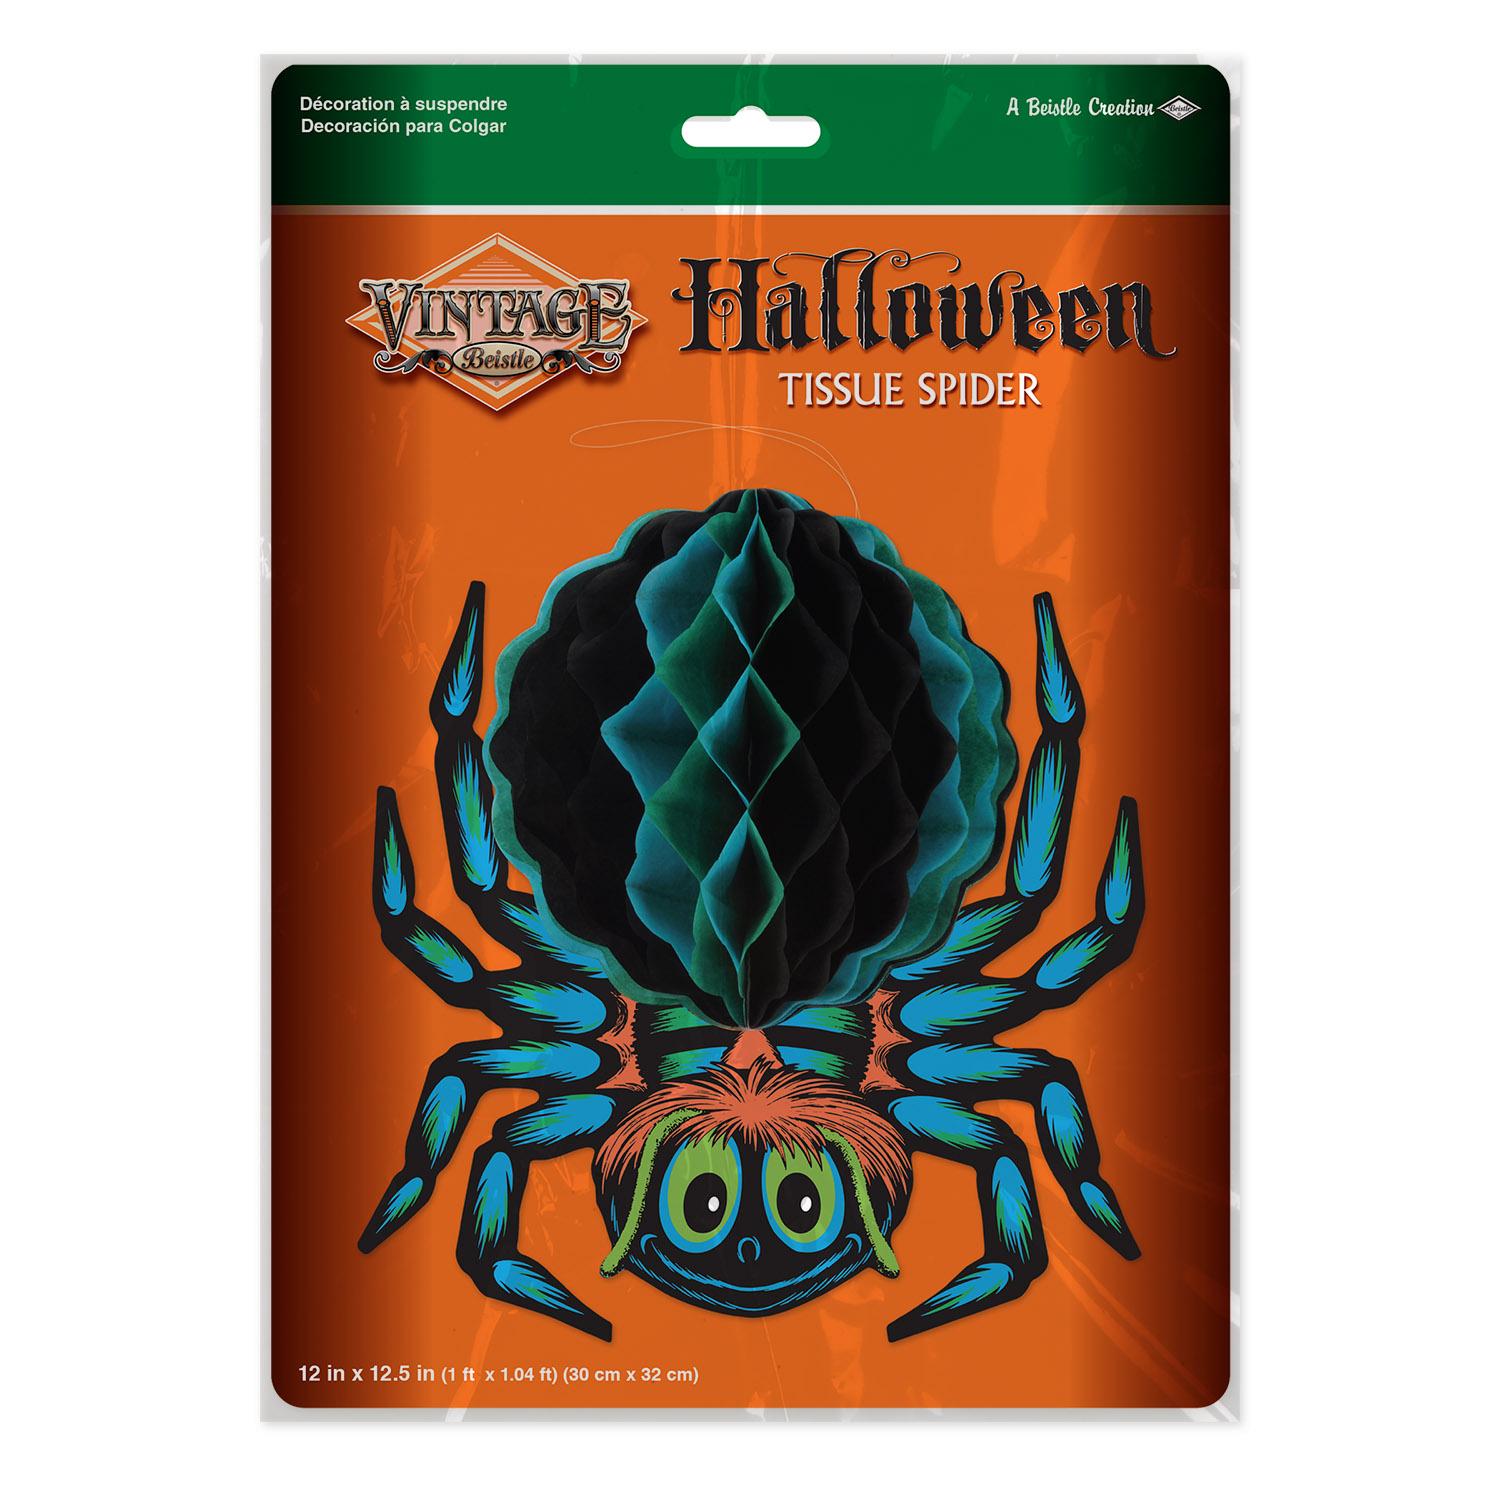 Beistle Vintage Halloween Tissue Spider